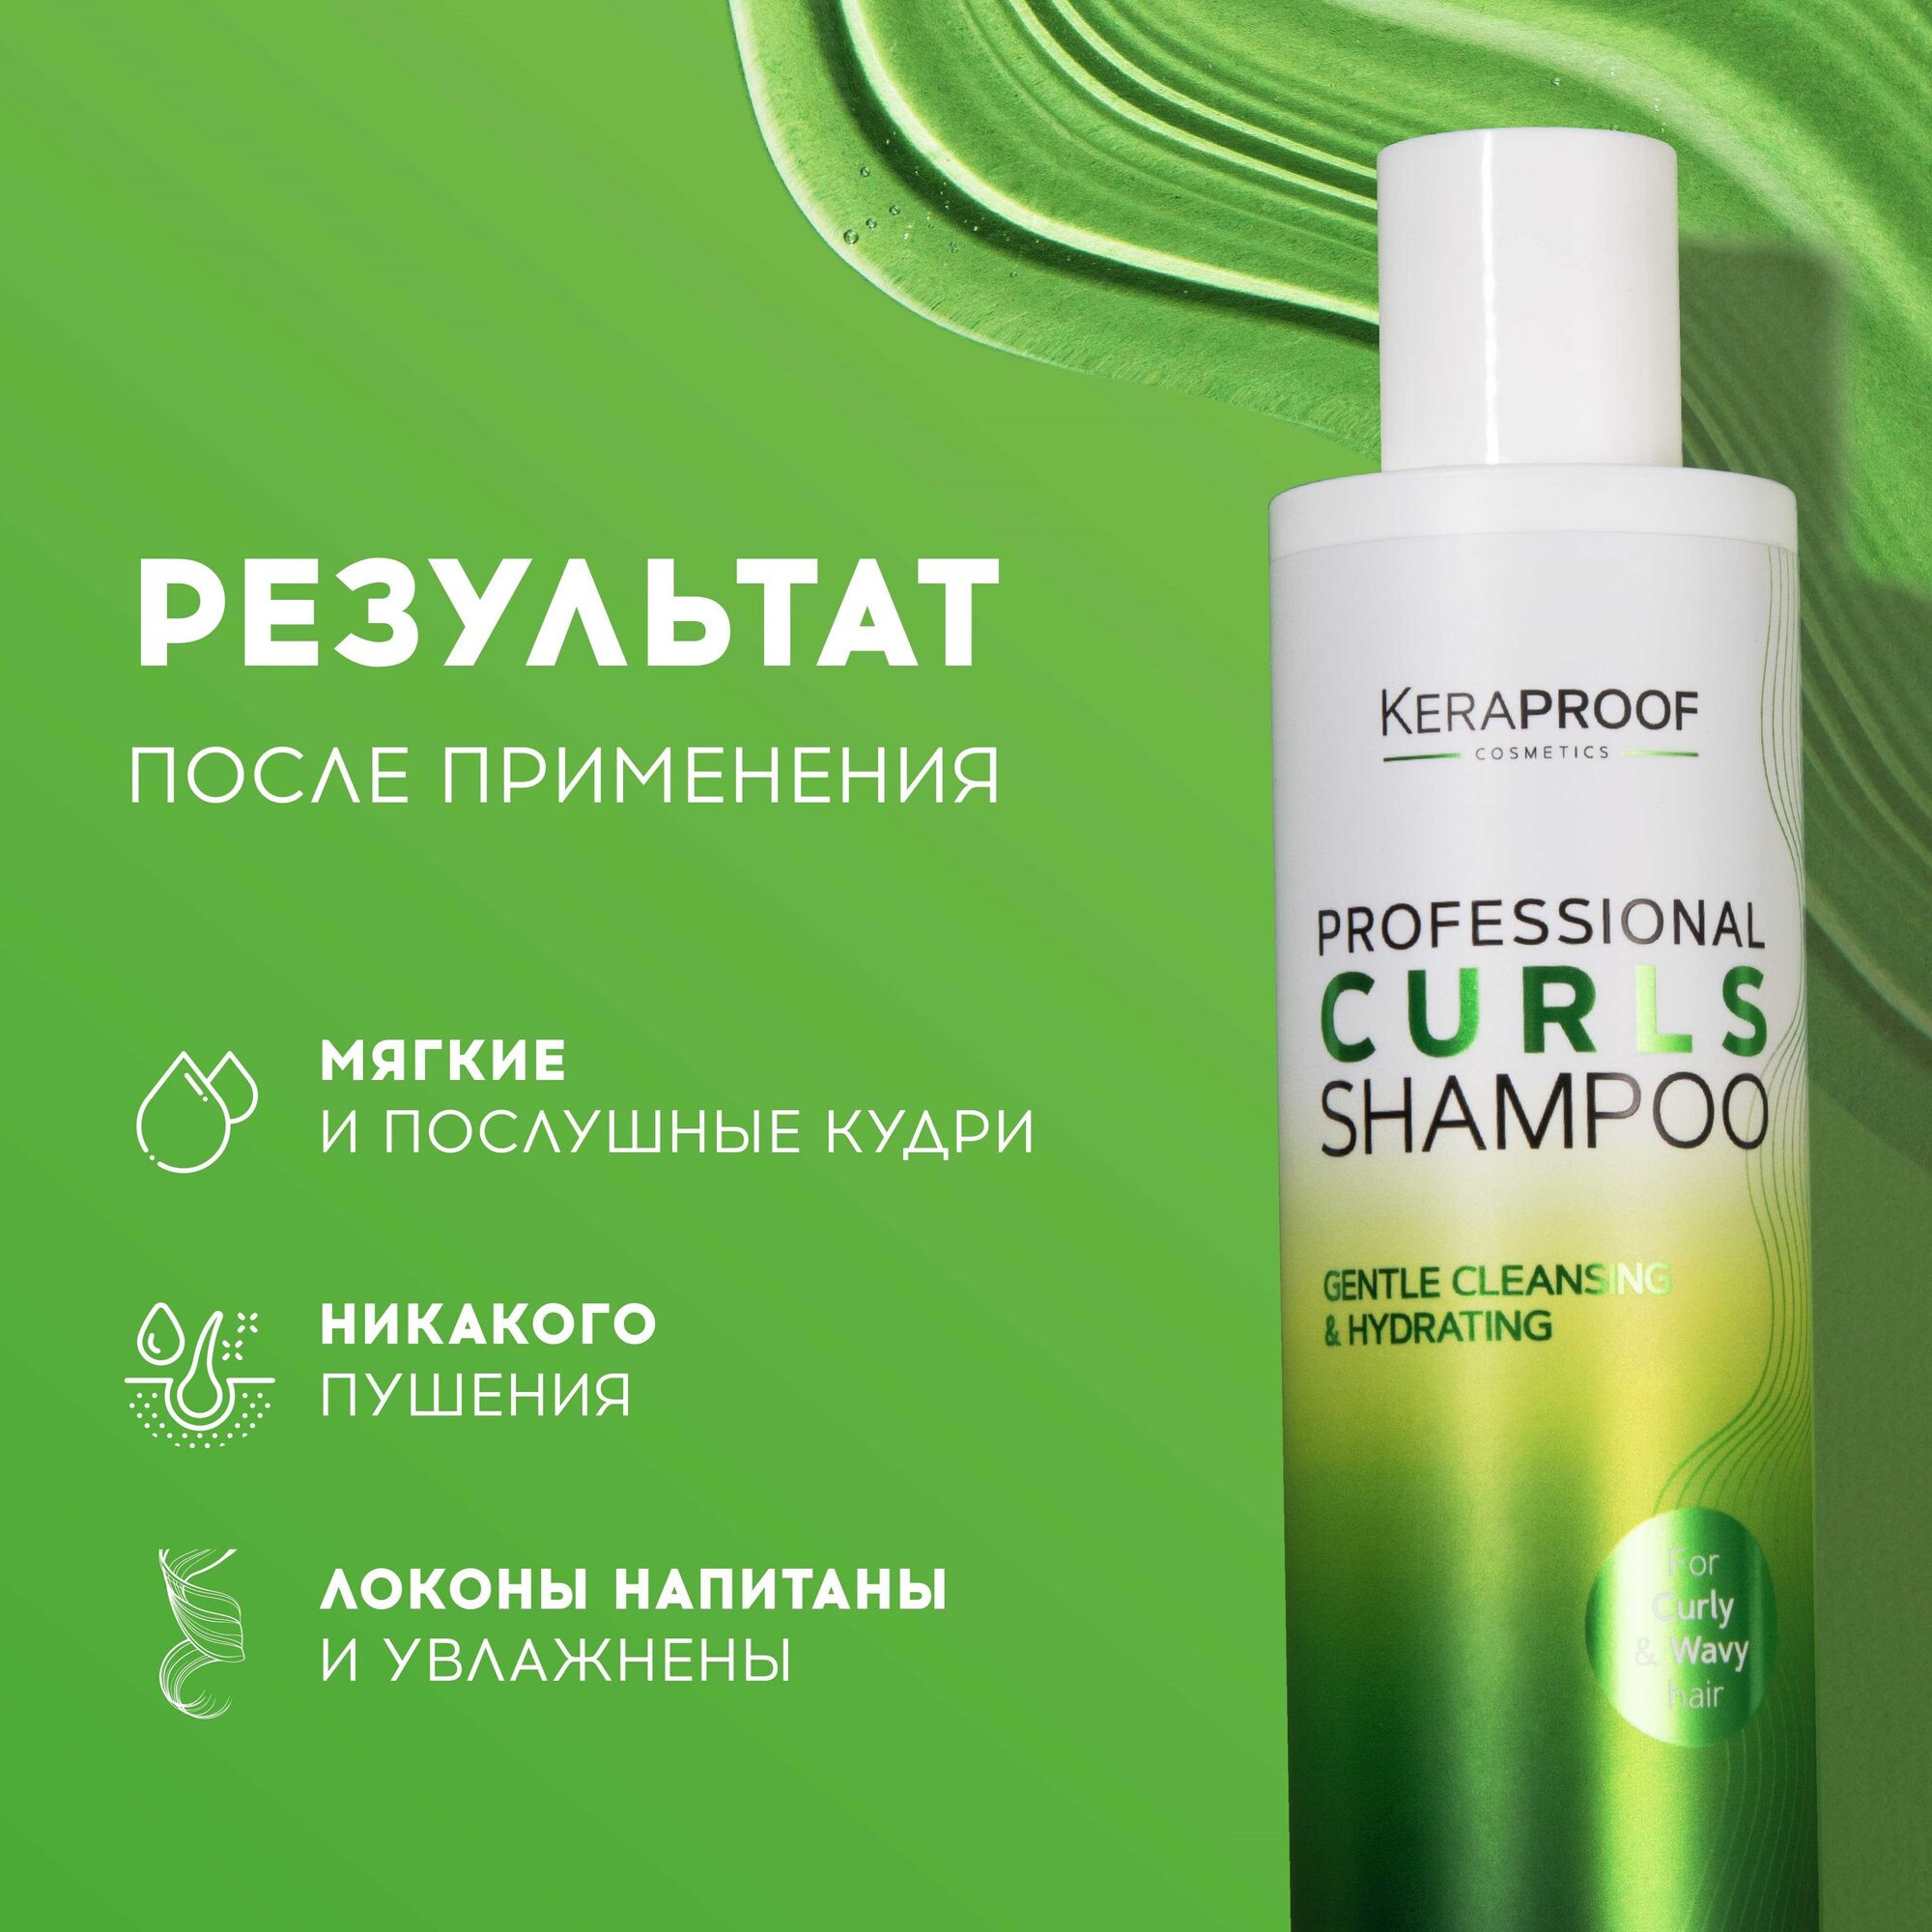 Шампунь для волос Keraproof Curl Enhancing Shampoo 250мл ДжиЭсЭс Косметикс - фото №3